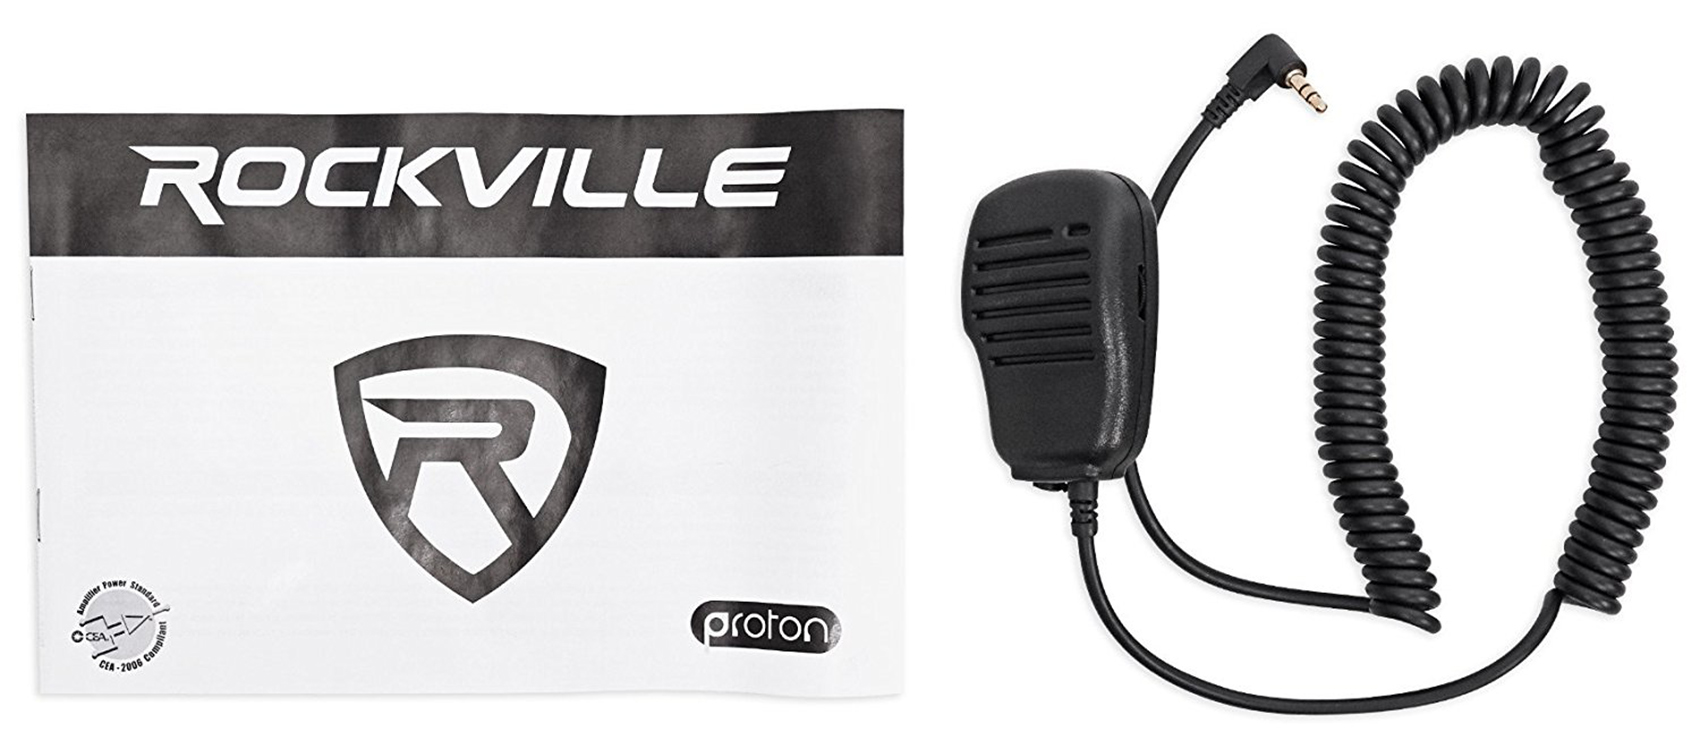 Rockville RXM-S20 Micro Marine/ATV Amplifier 1600w Peak 4 Channel